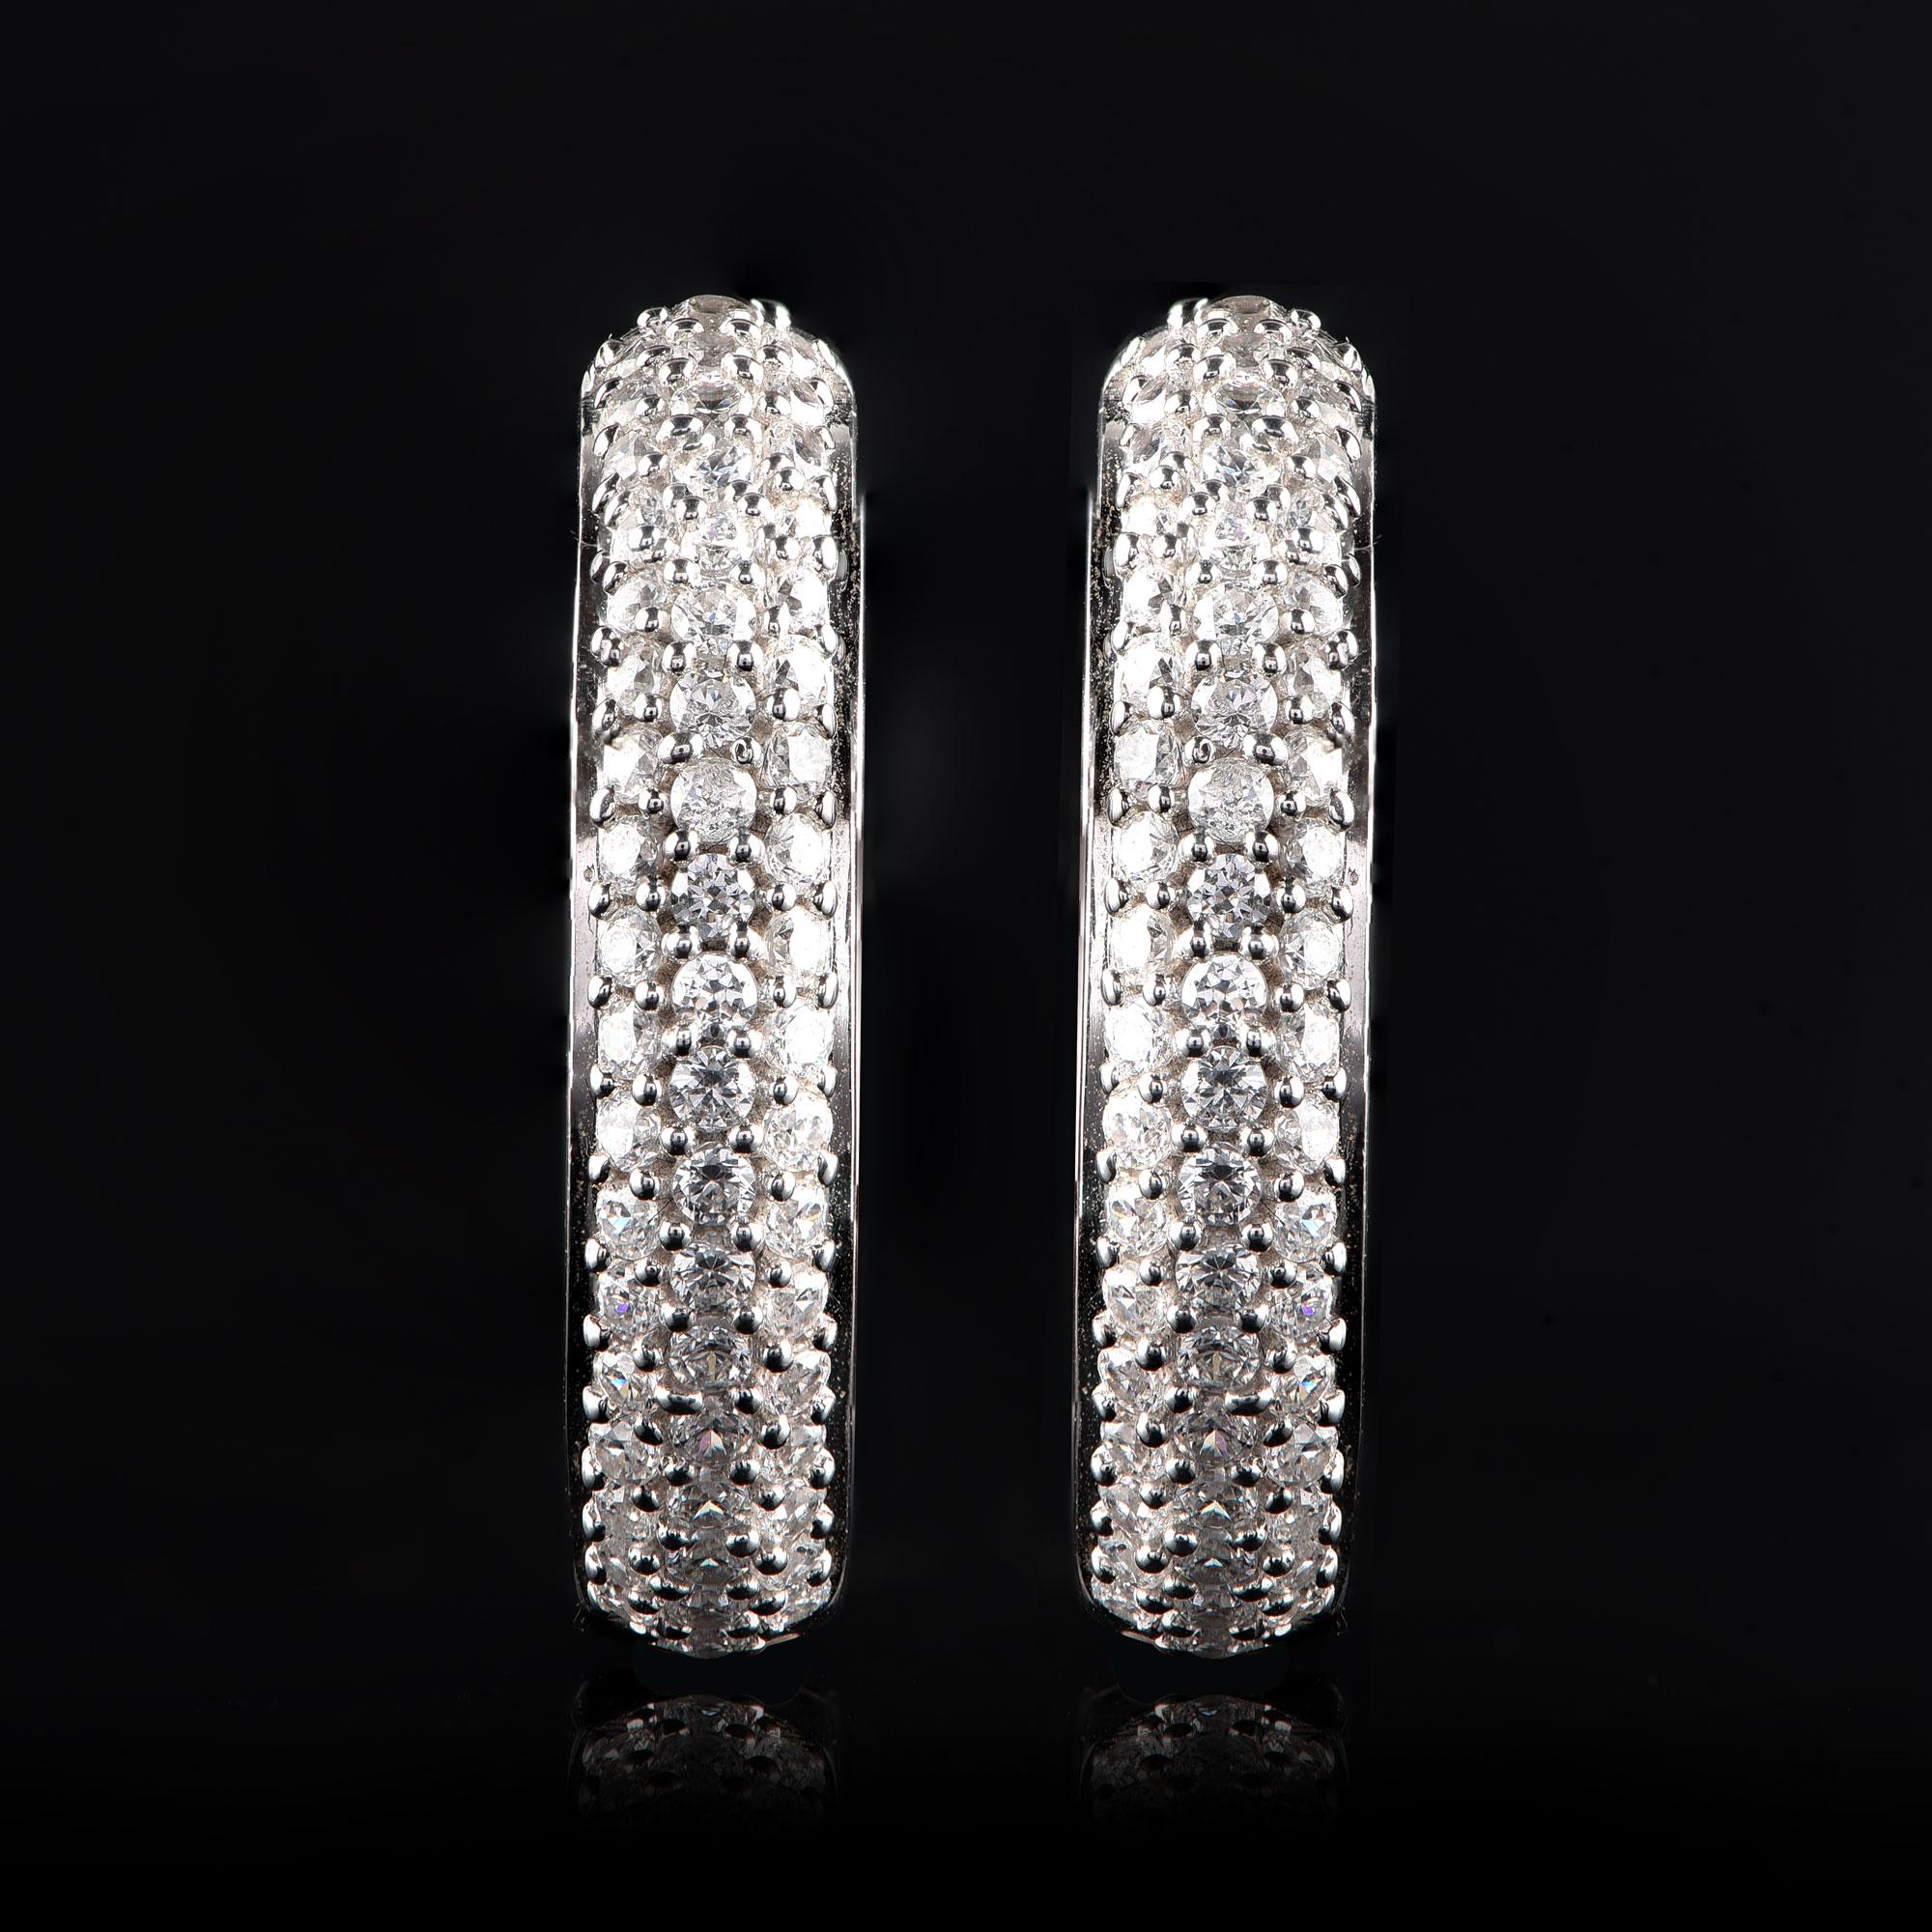 Ce style élégant présente 190 diamants taille brillant dans un sertissage en pavé. Il est magnifiquement réalisé en or blanc 18 carats. Les diamants sont classés H-I Color, I2 Clarity.